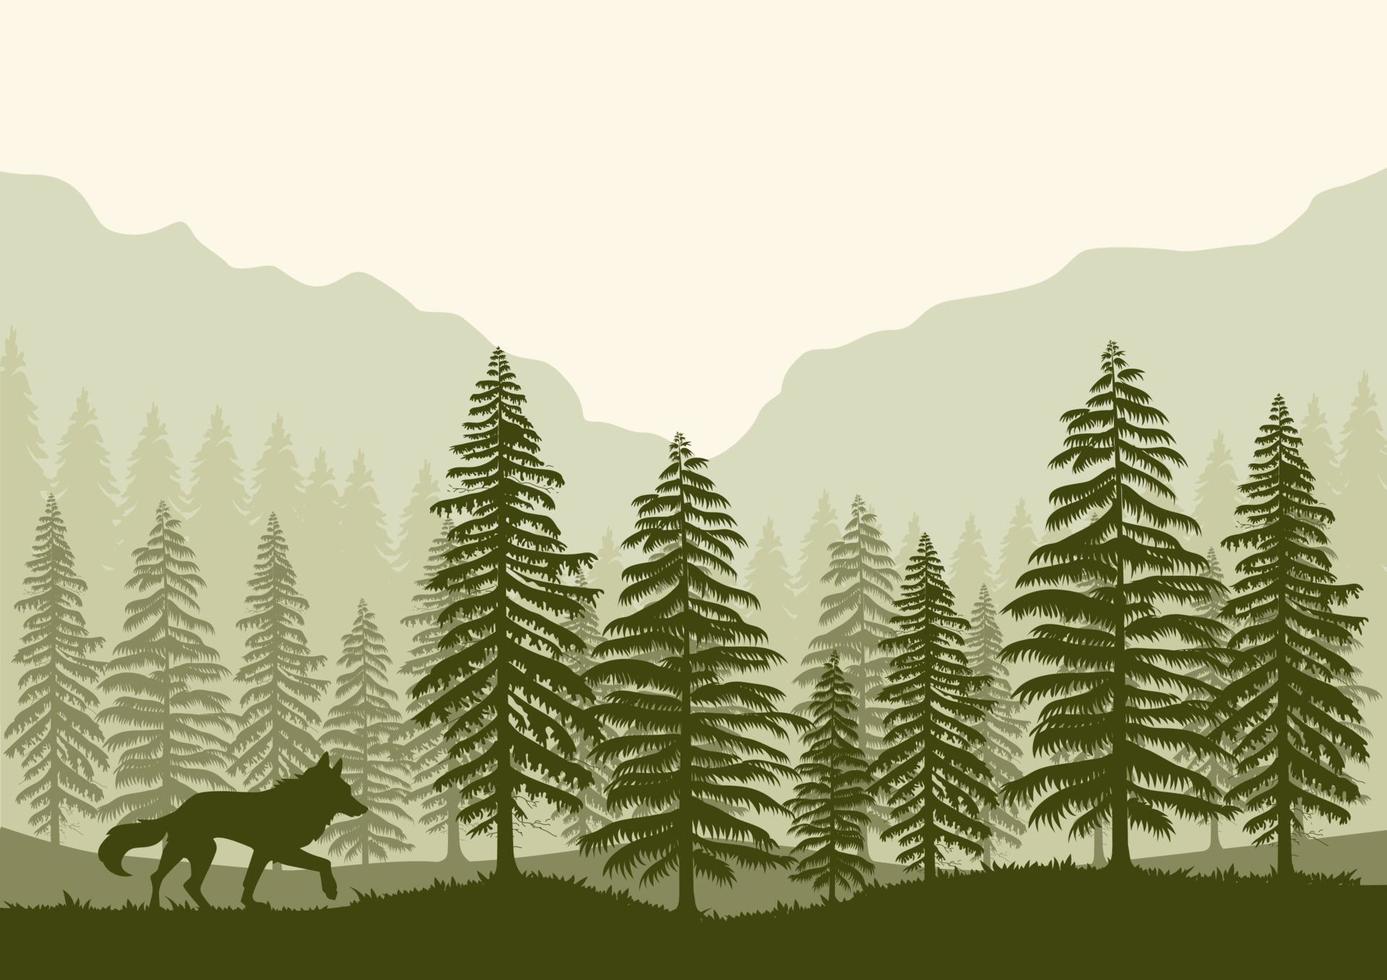 paysage forestier et illustration vectorielle de loup avec une silhouette verte. vecteur